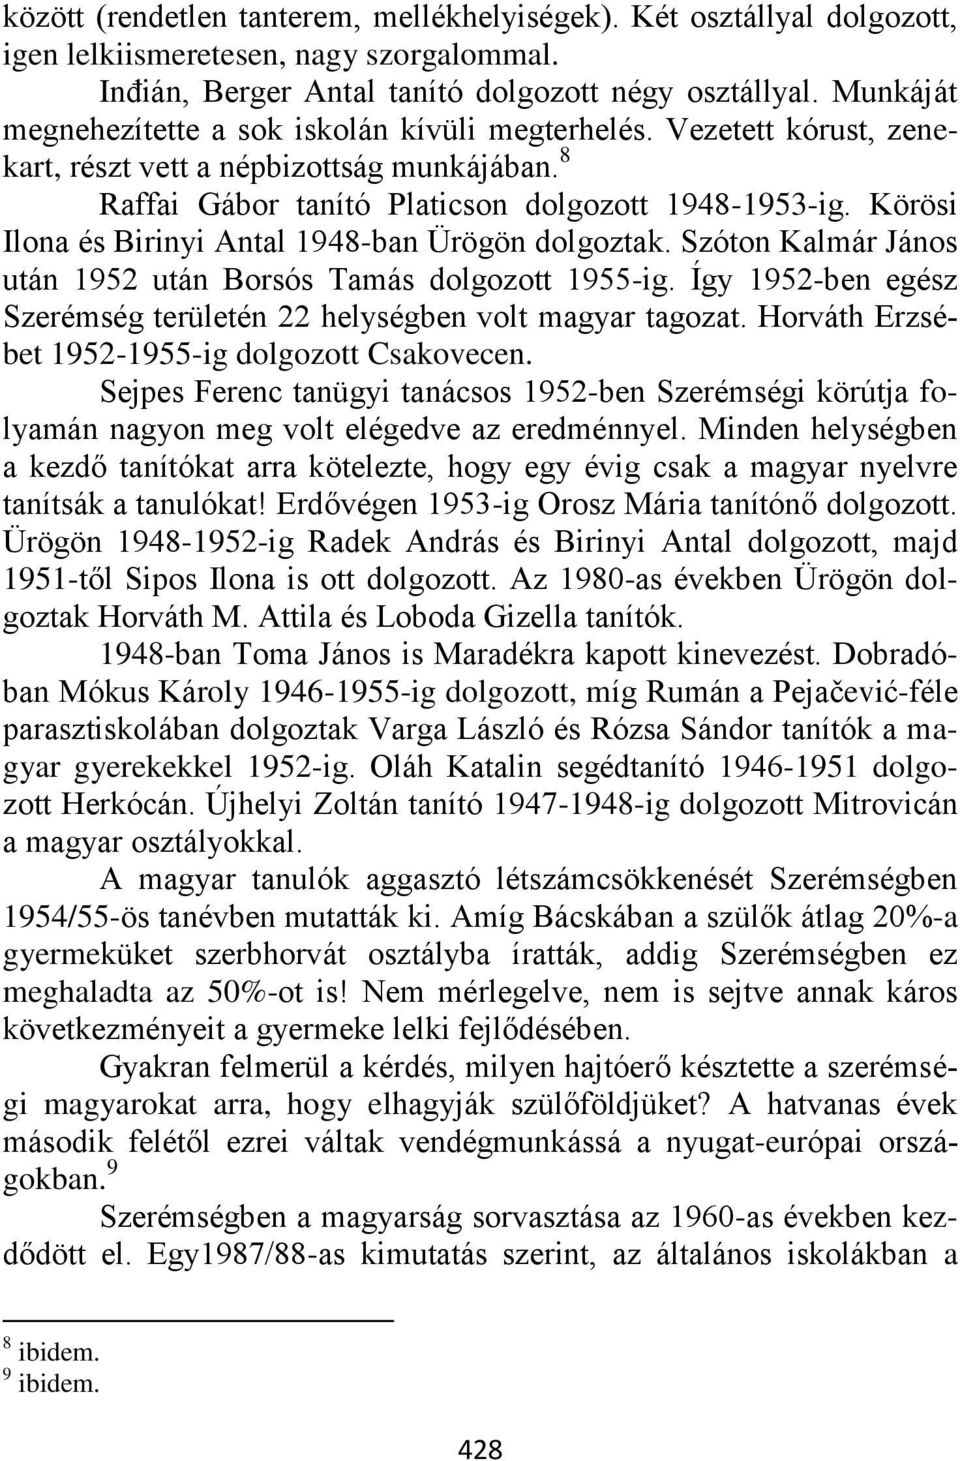 Körösi Ilona és Birinyi Antal 1948-ban Ürögön dolgoztak. Szóton Kalmár János után 1952 után Borsós Tamás dolgozott 1955-ig. Így 1952-ben egész Szerémség területén 22 helységben volt magyar tagozat.